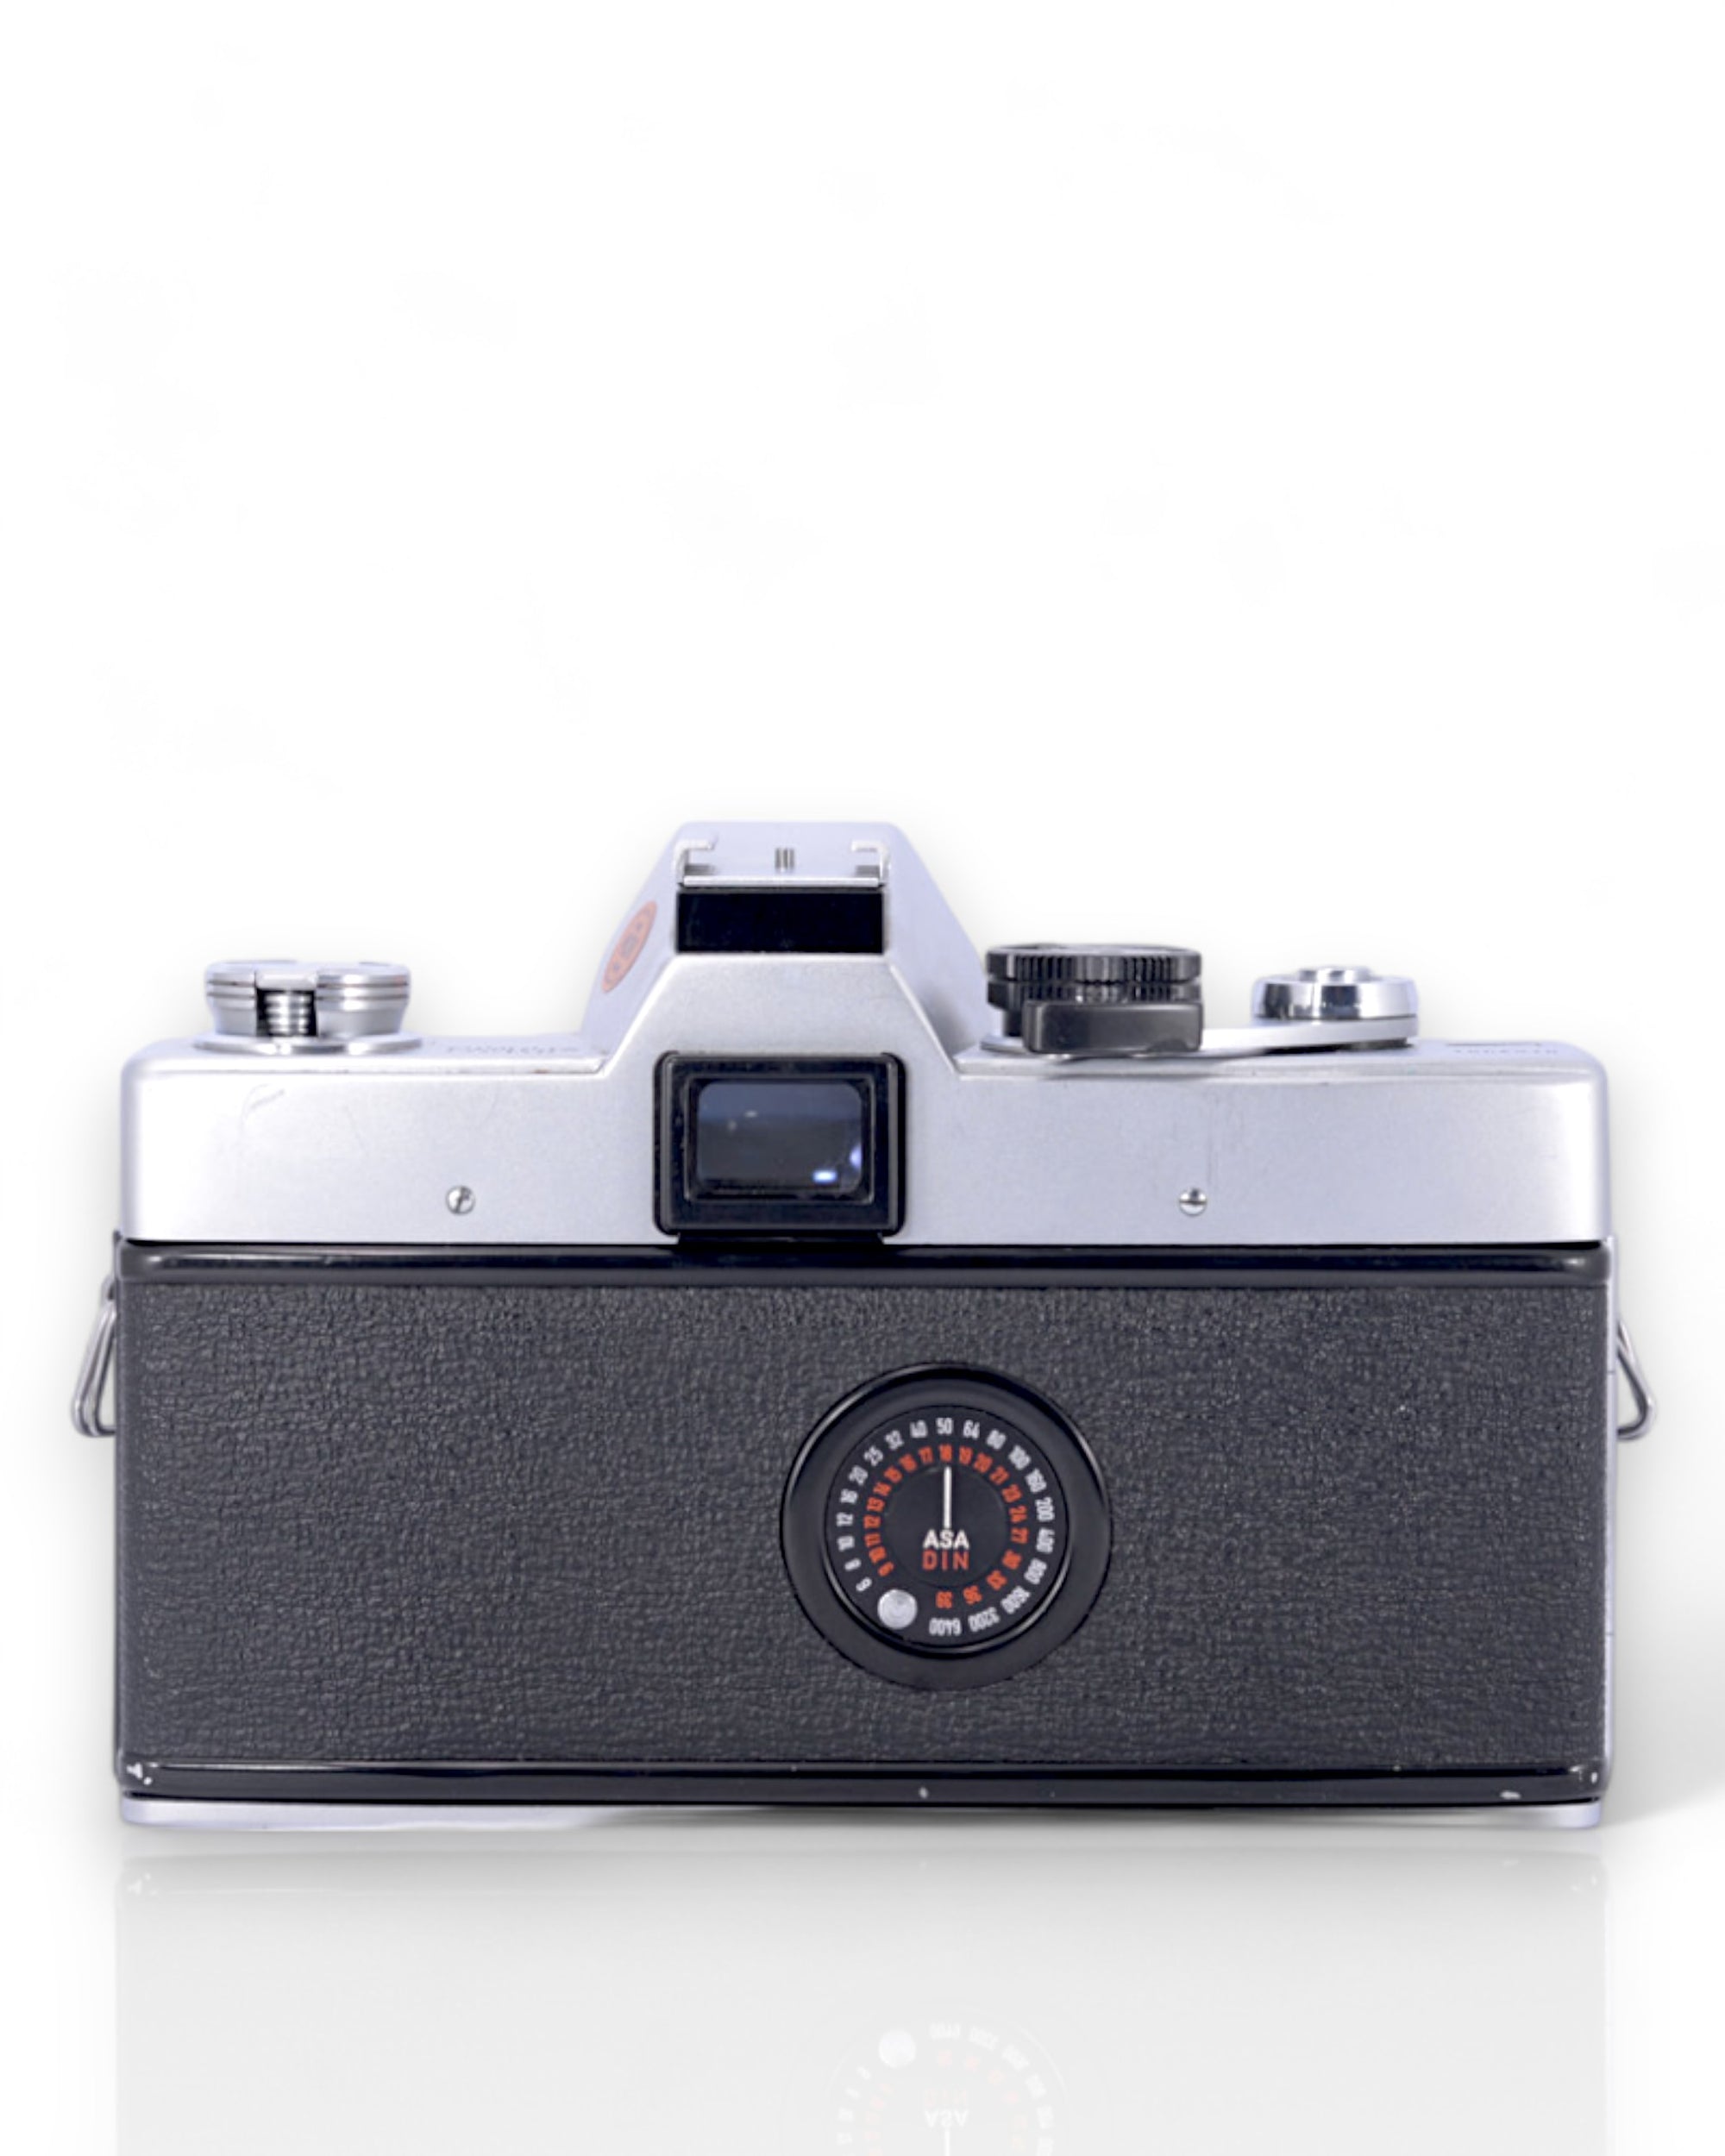 Minolta SRT 101 35mm SLR Film Camera with 35mm f2.8 Lens